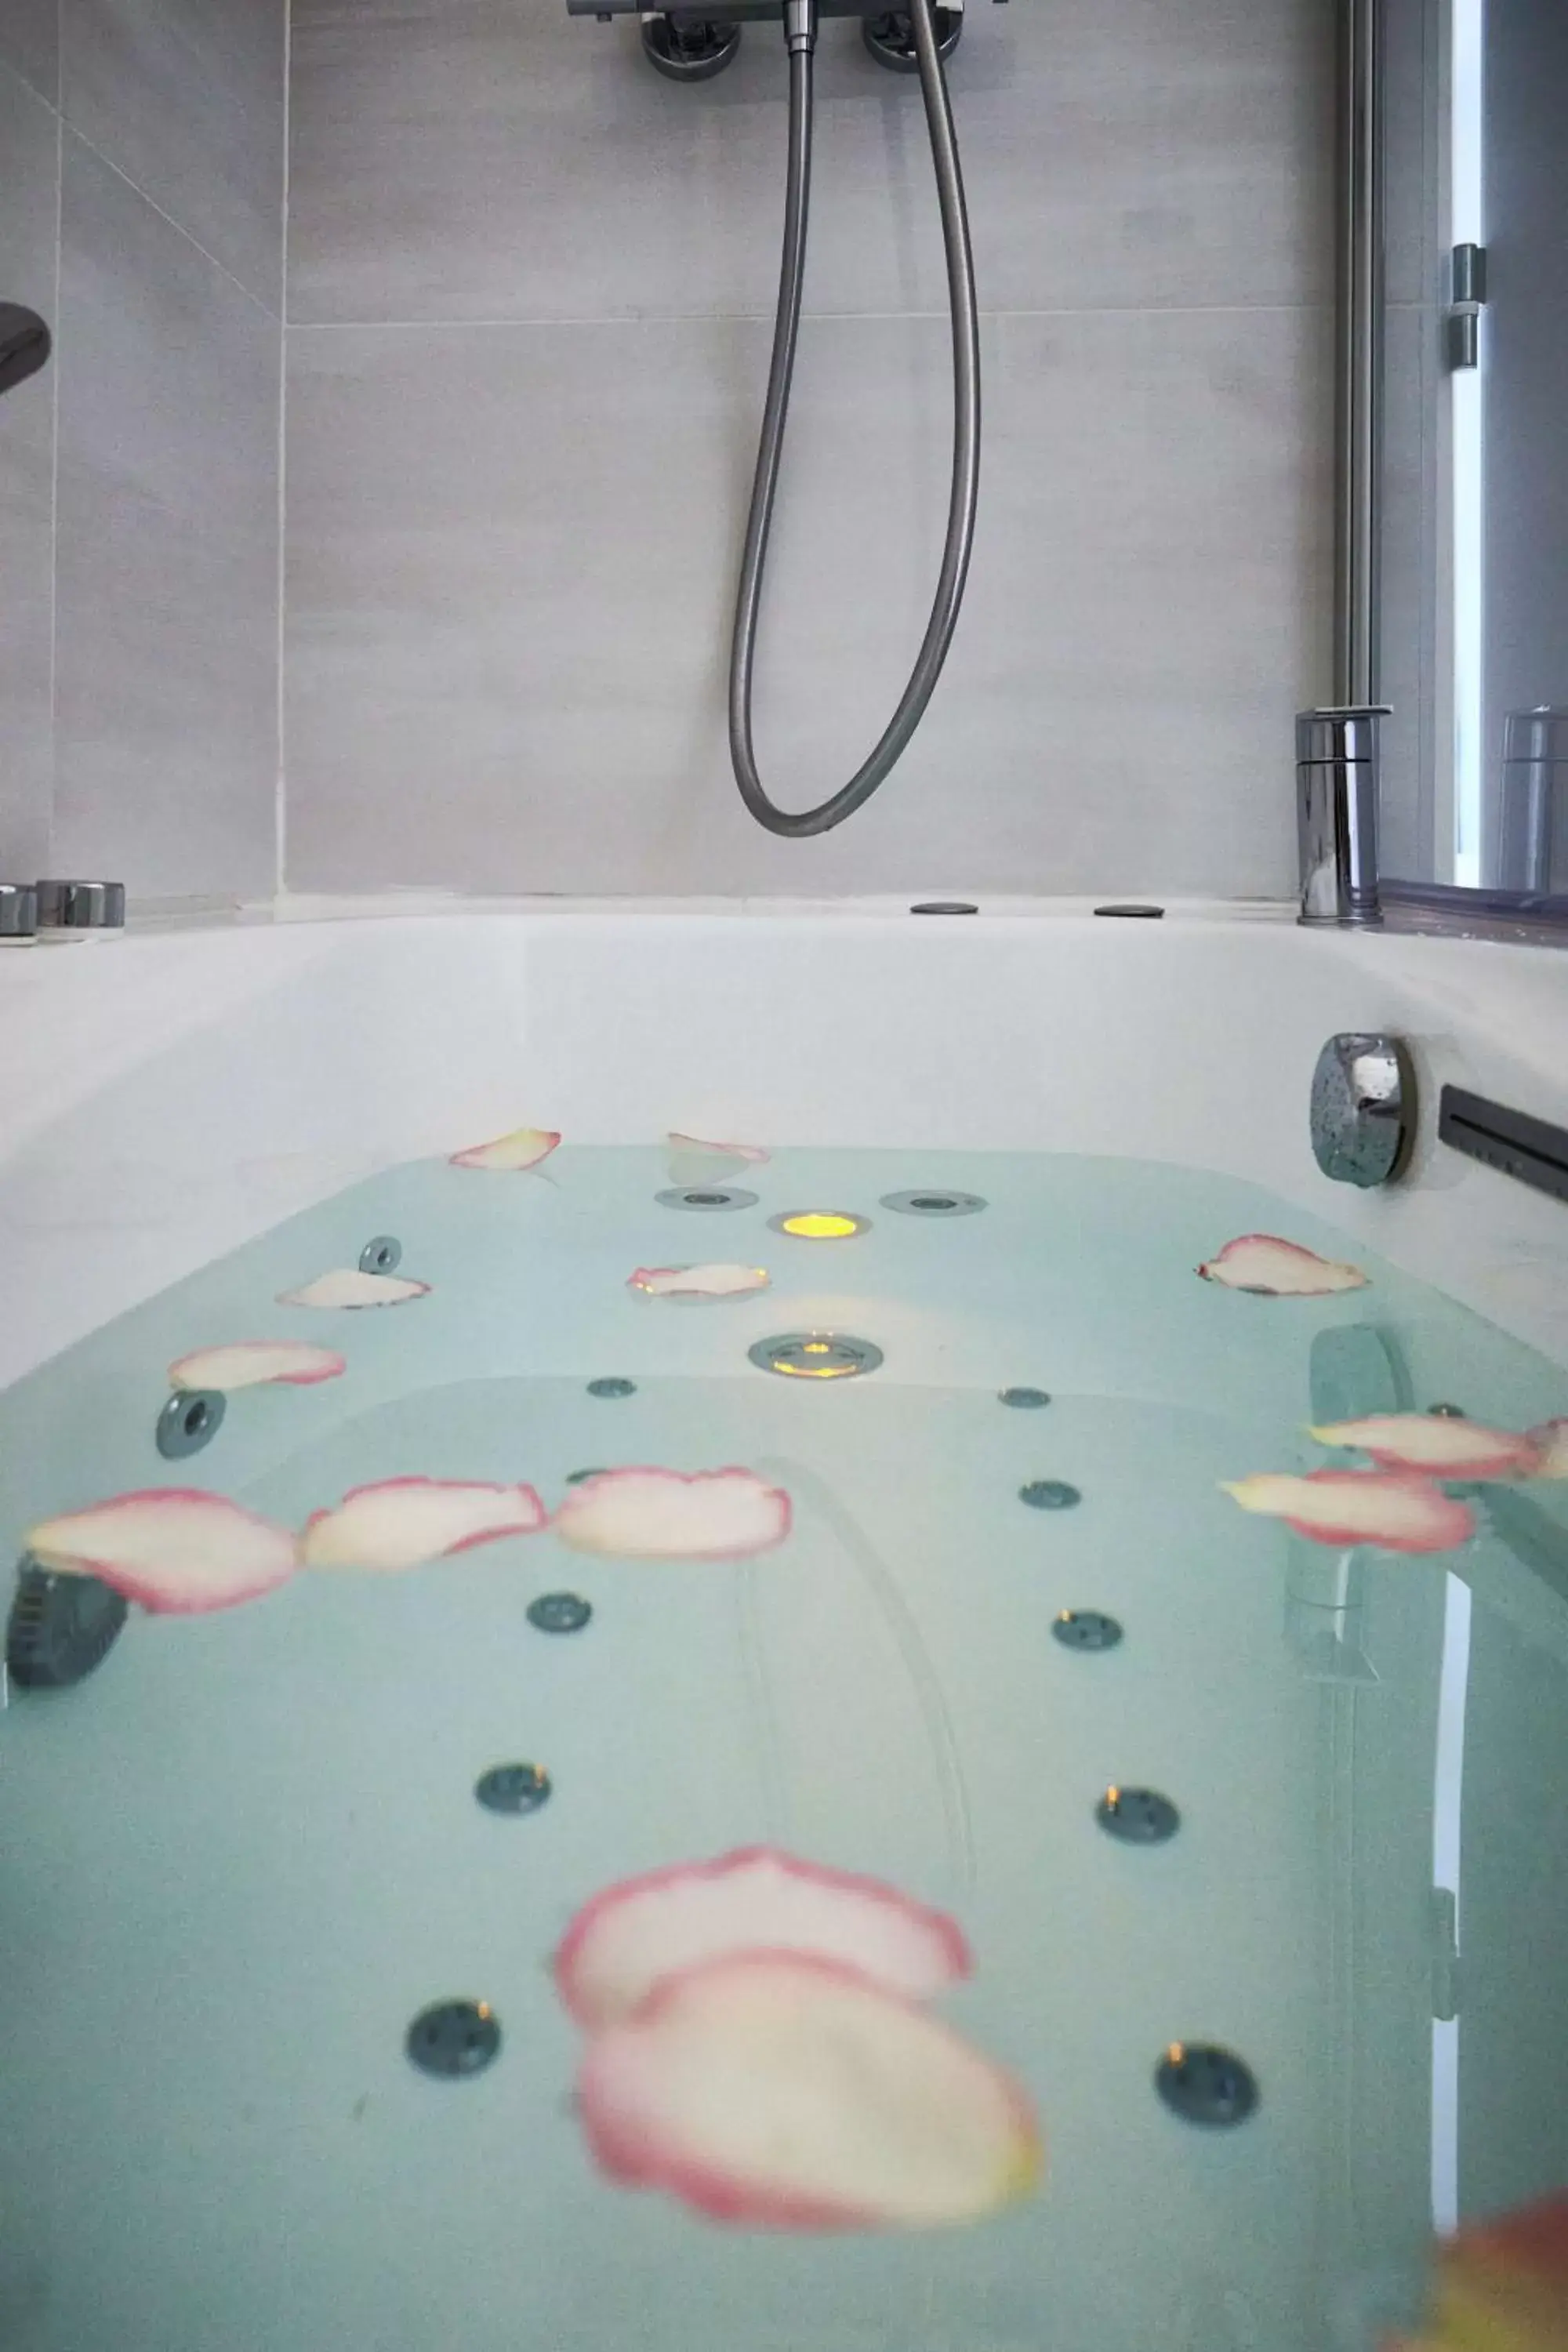 Hot Tub, Bathroom in Best Western Plus Hotel Carlton Annecy